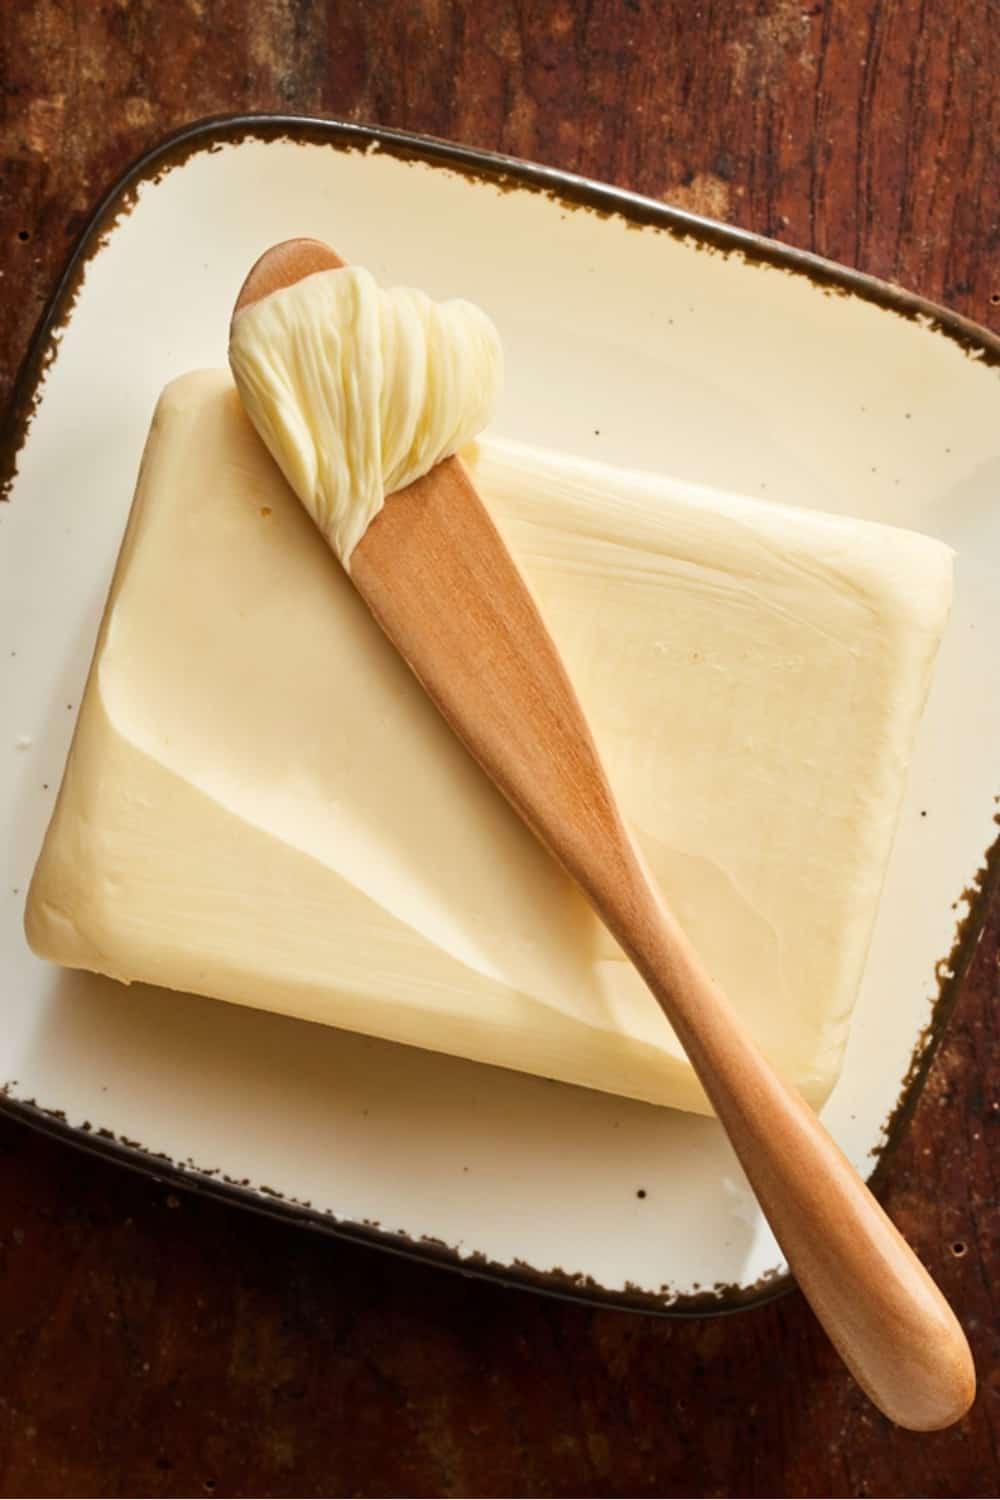 Butter vom Bauernhof mit Holzspatel und einer Kugel Butter